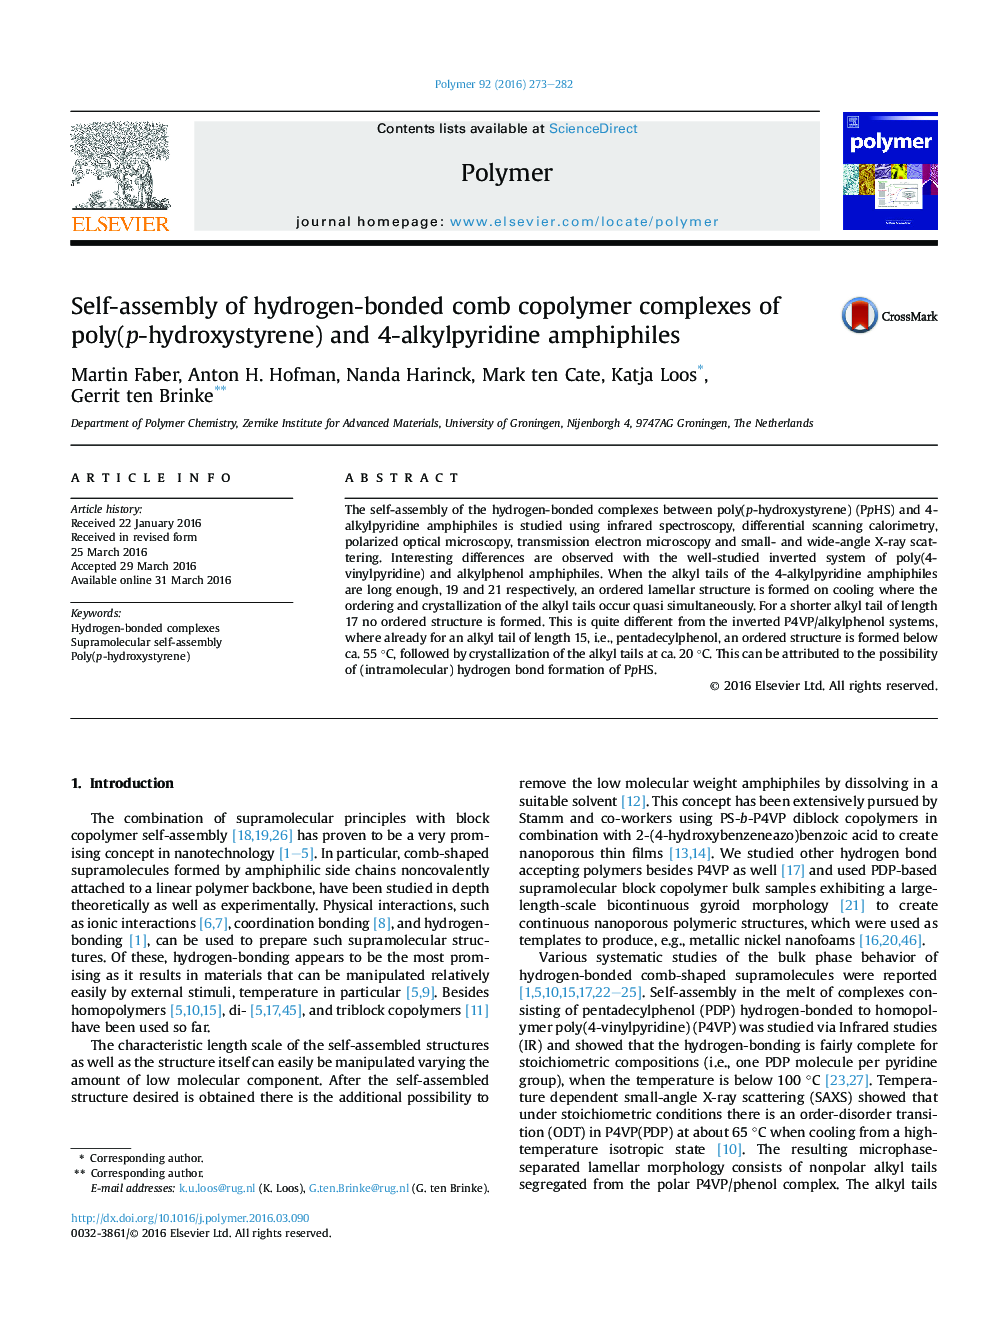 خودآموزی مجتمع های کوپلیمر ترکیبی هیدروژن همراه پلی فت (هیدروکسی استایرن) و آمفیفیل های 4-آلکیل پرییدین 